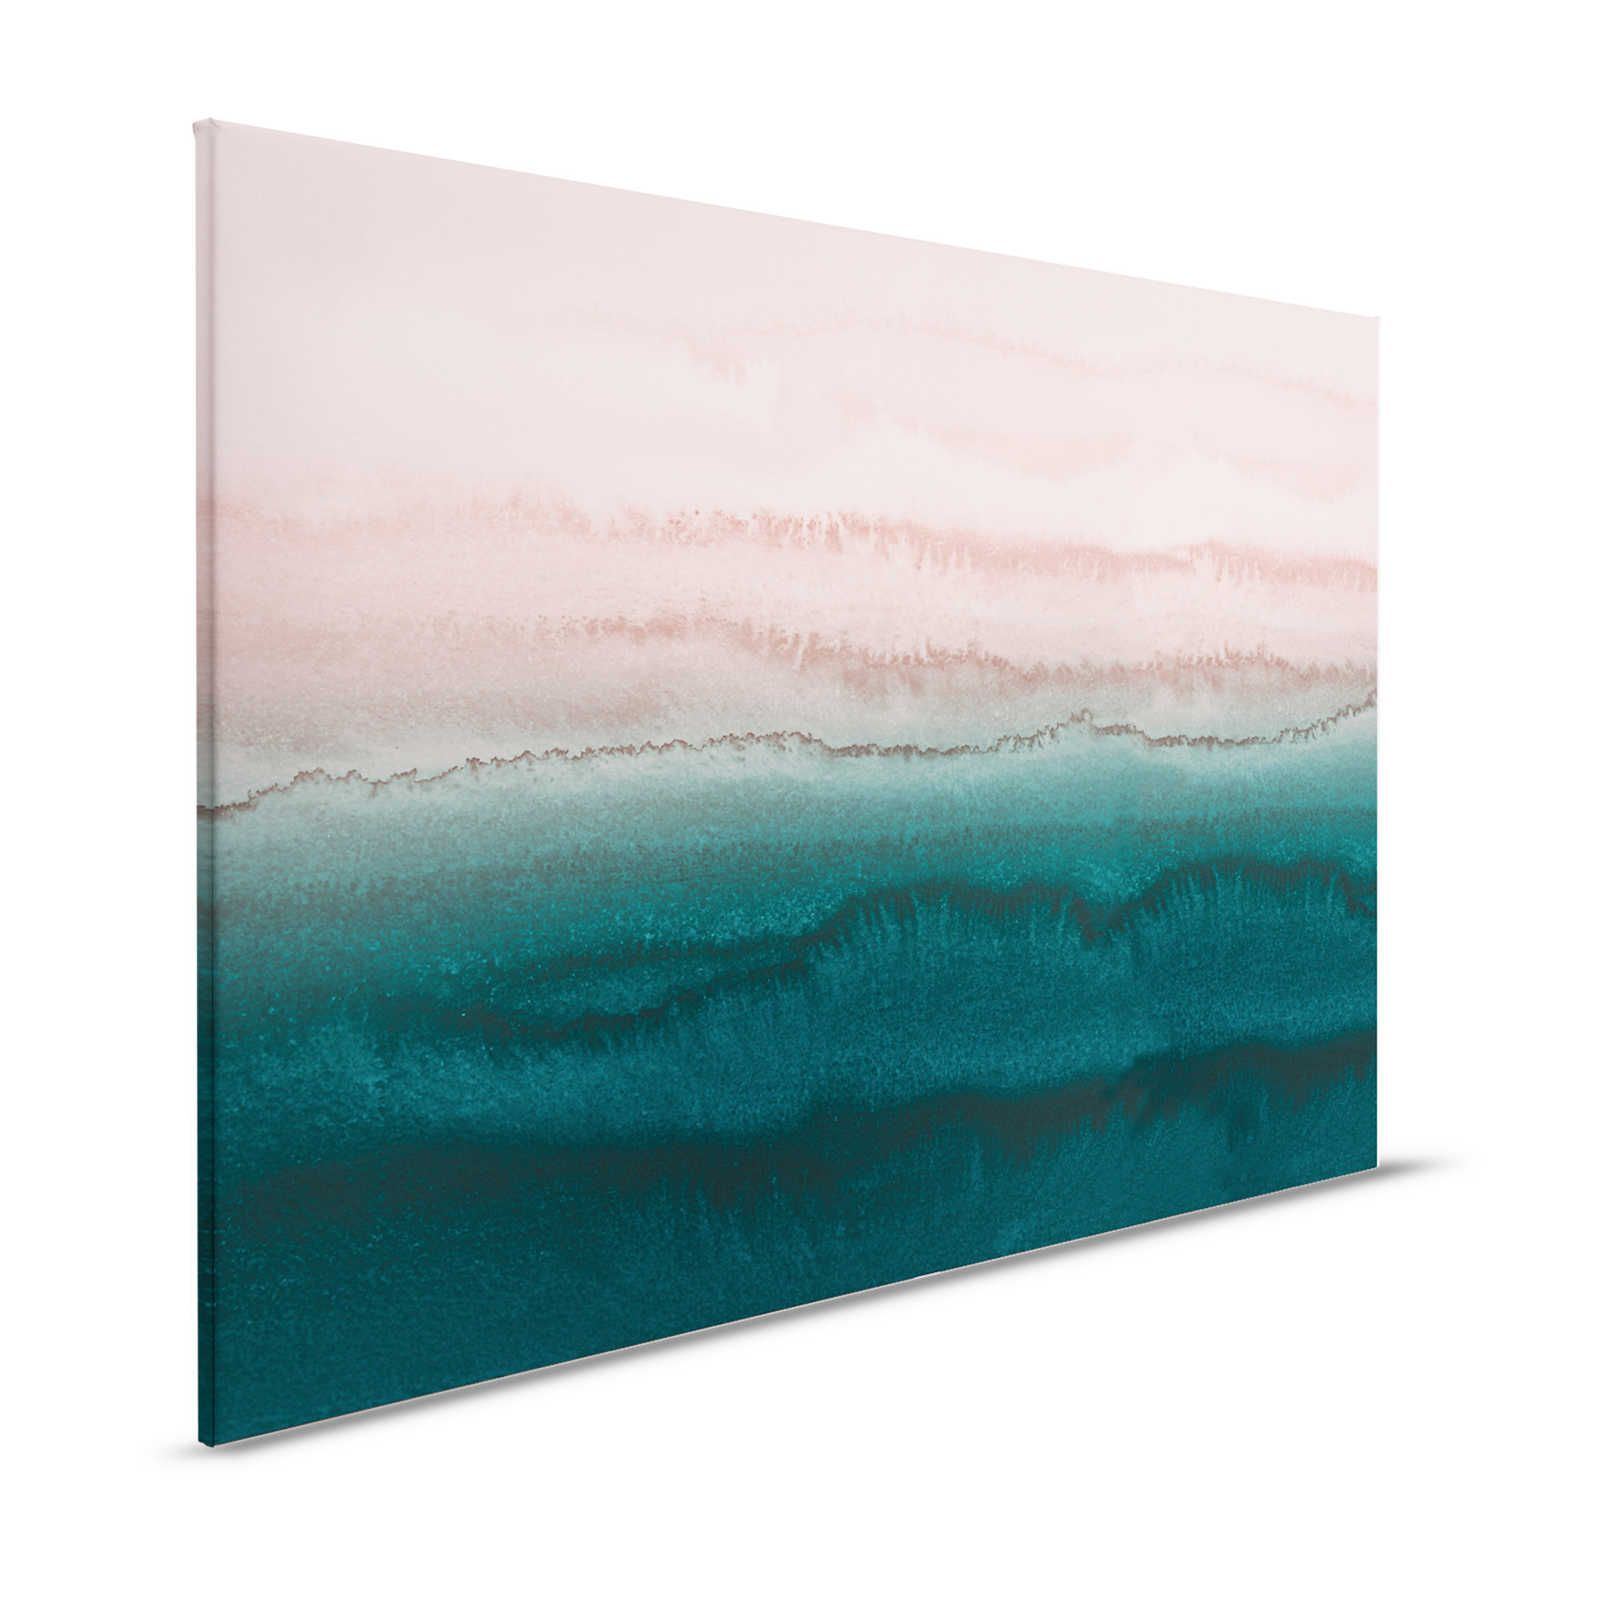 Pittura su tela con acquerello astratto Tides - 1,20 m x 0,80 m
